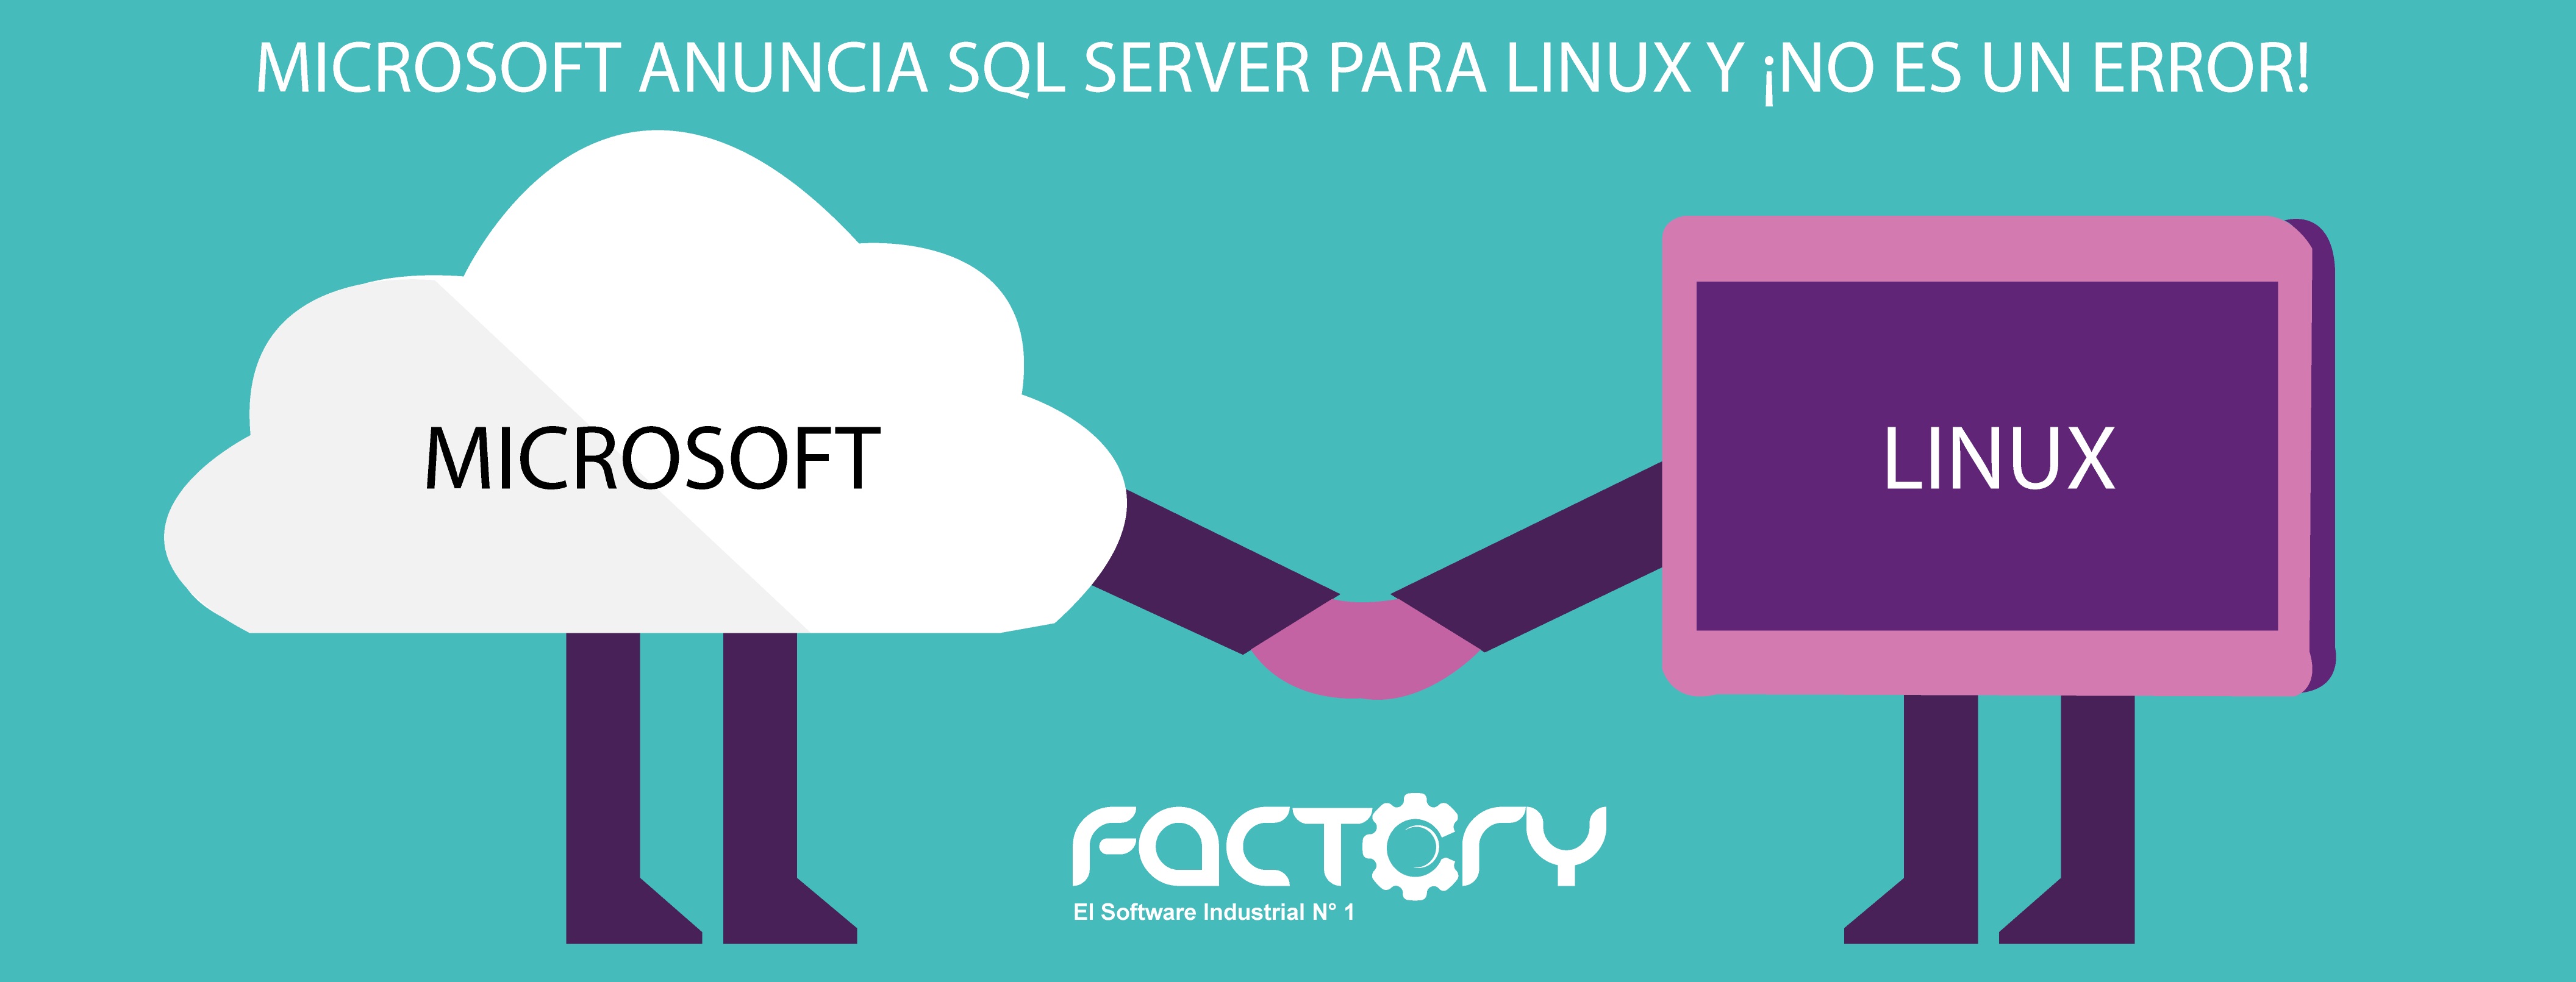 SQL-SERVER-PARA-LINUX-